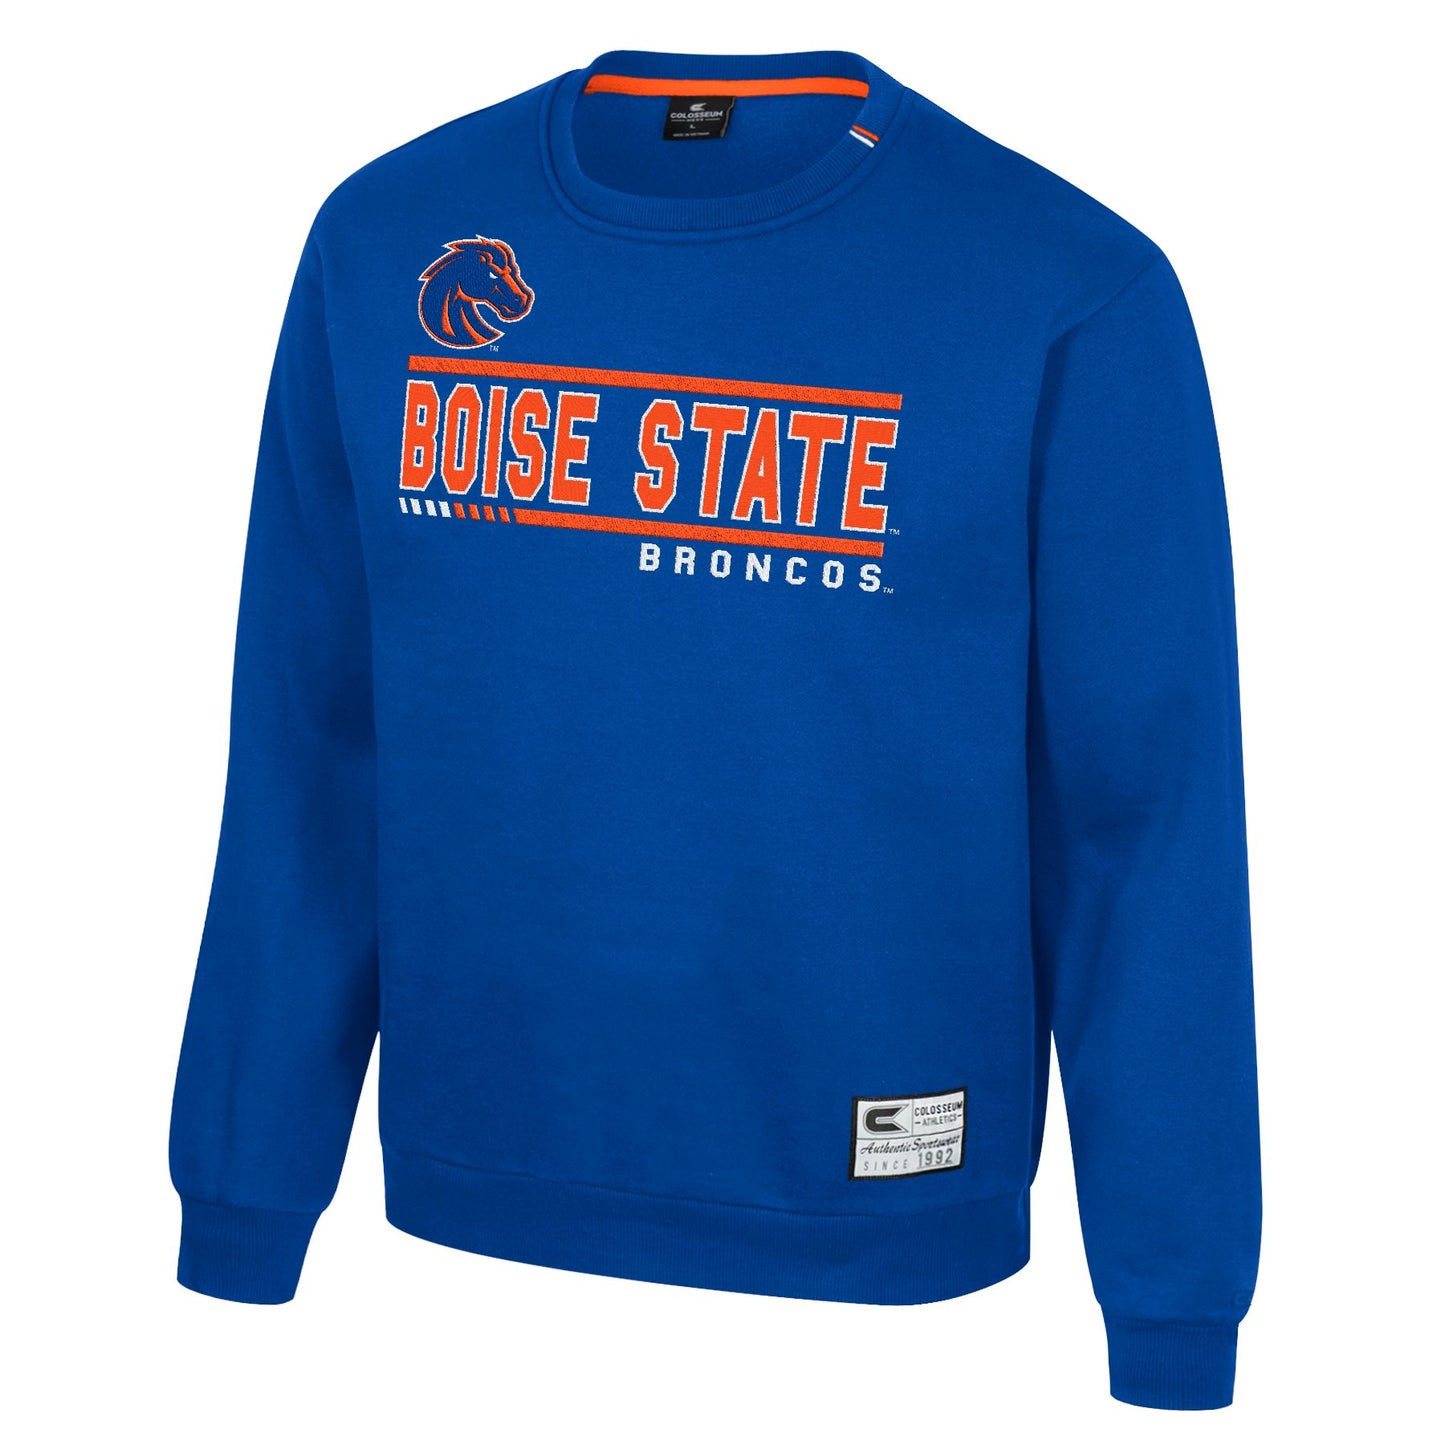 Boise State Broncos Men's Colosseum Crewneck Sweatshirt (Blue)